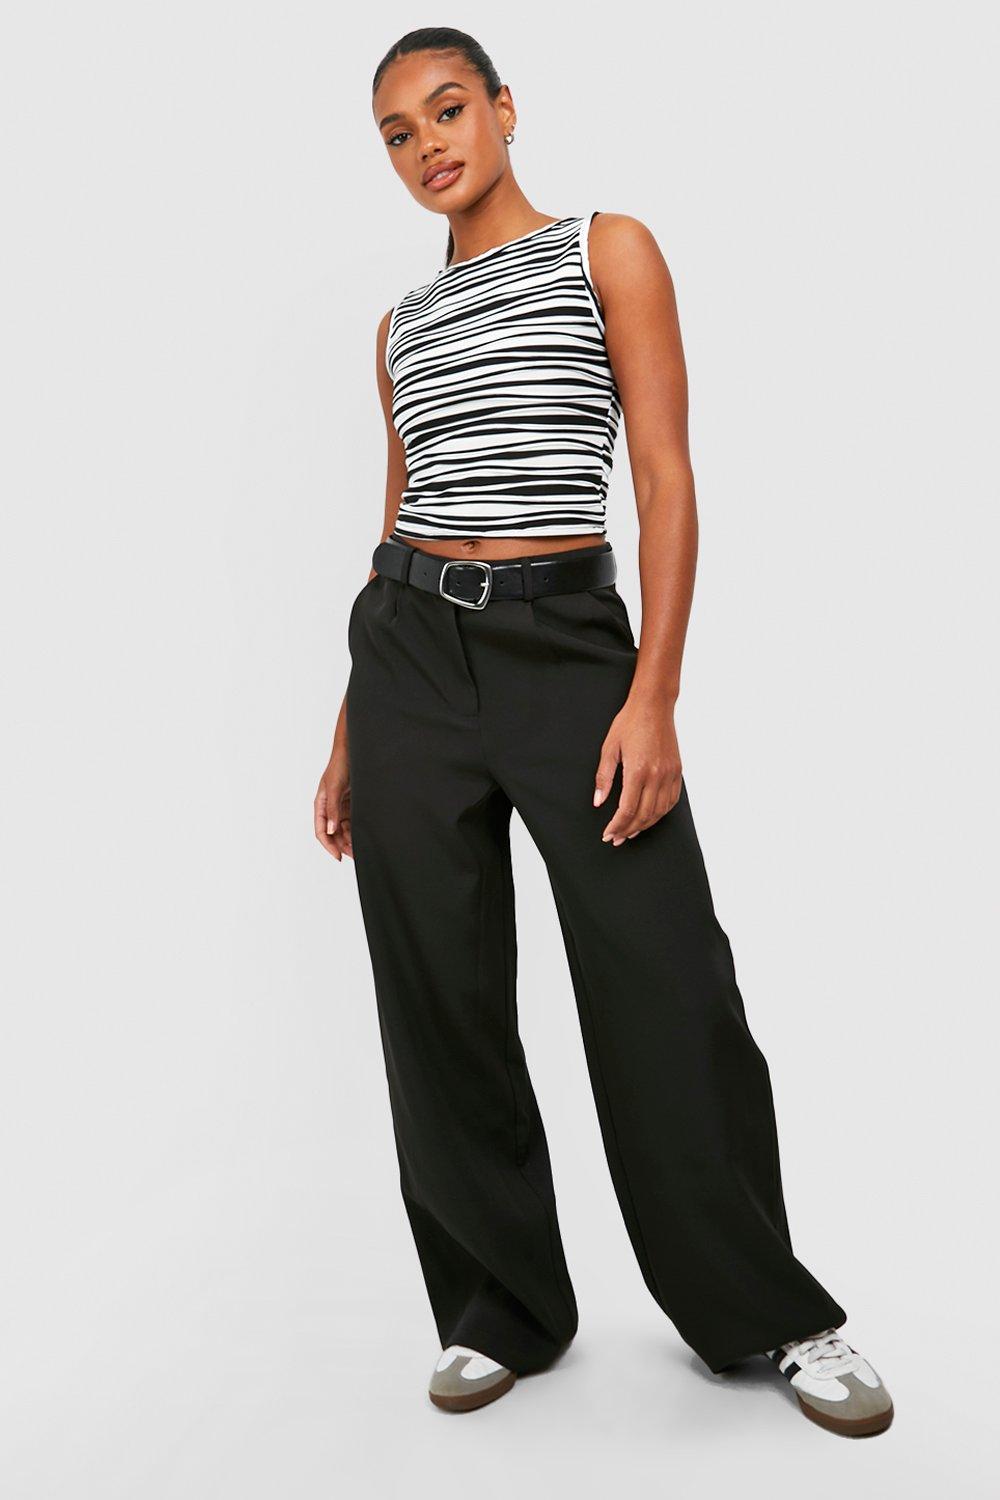 ASOS DESIGN trouser with skirt detail in black stripe